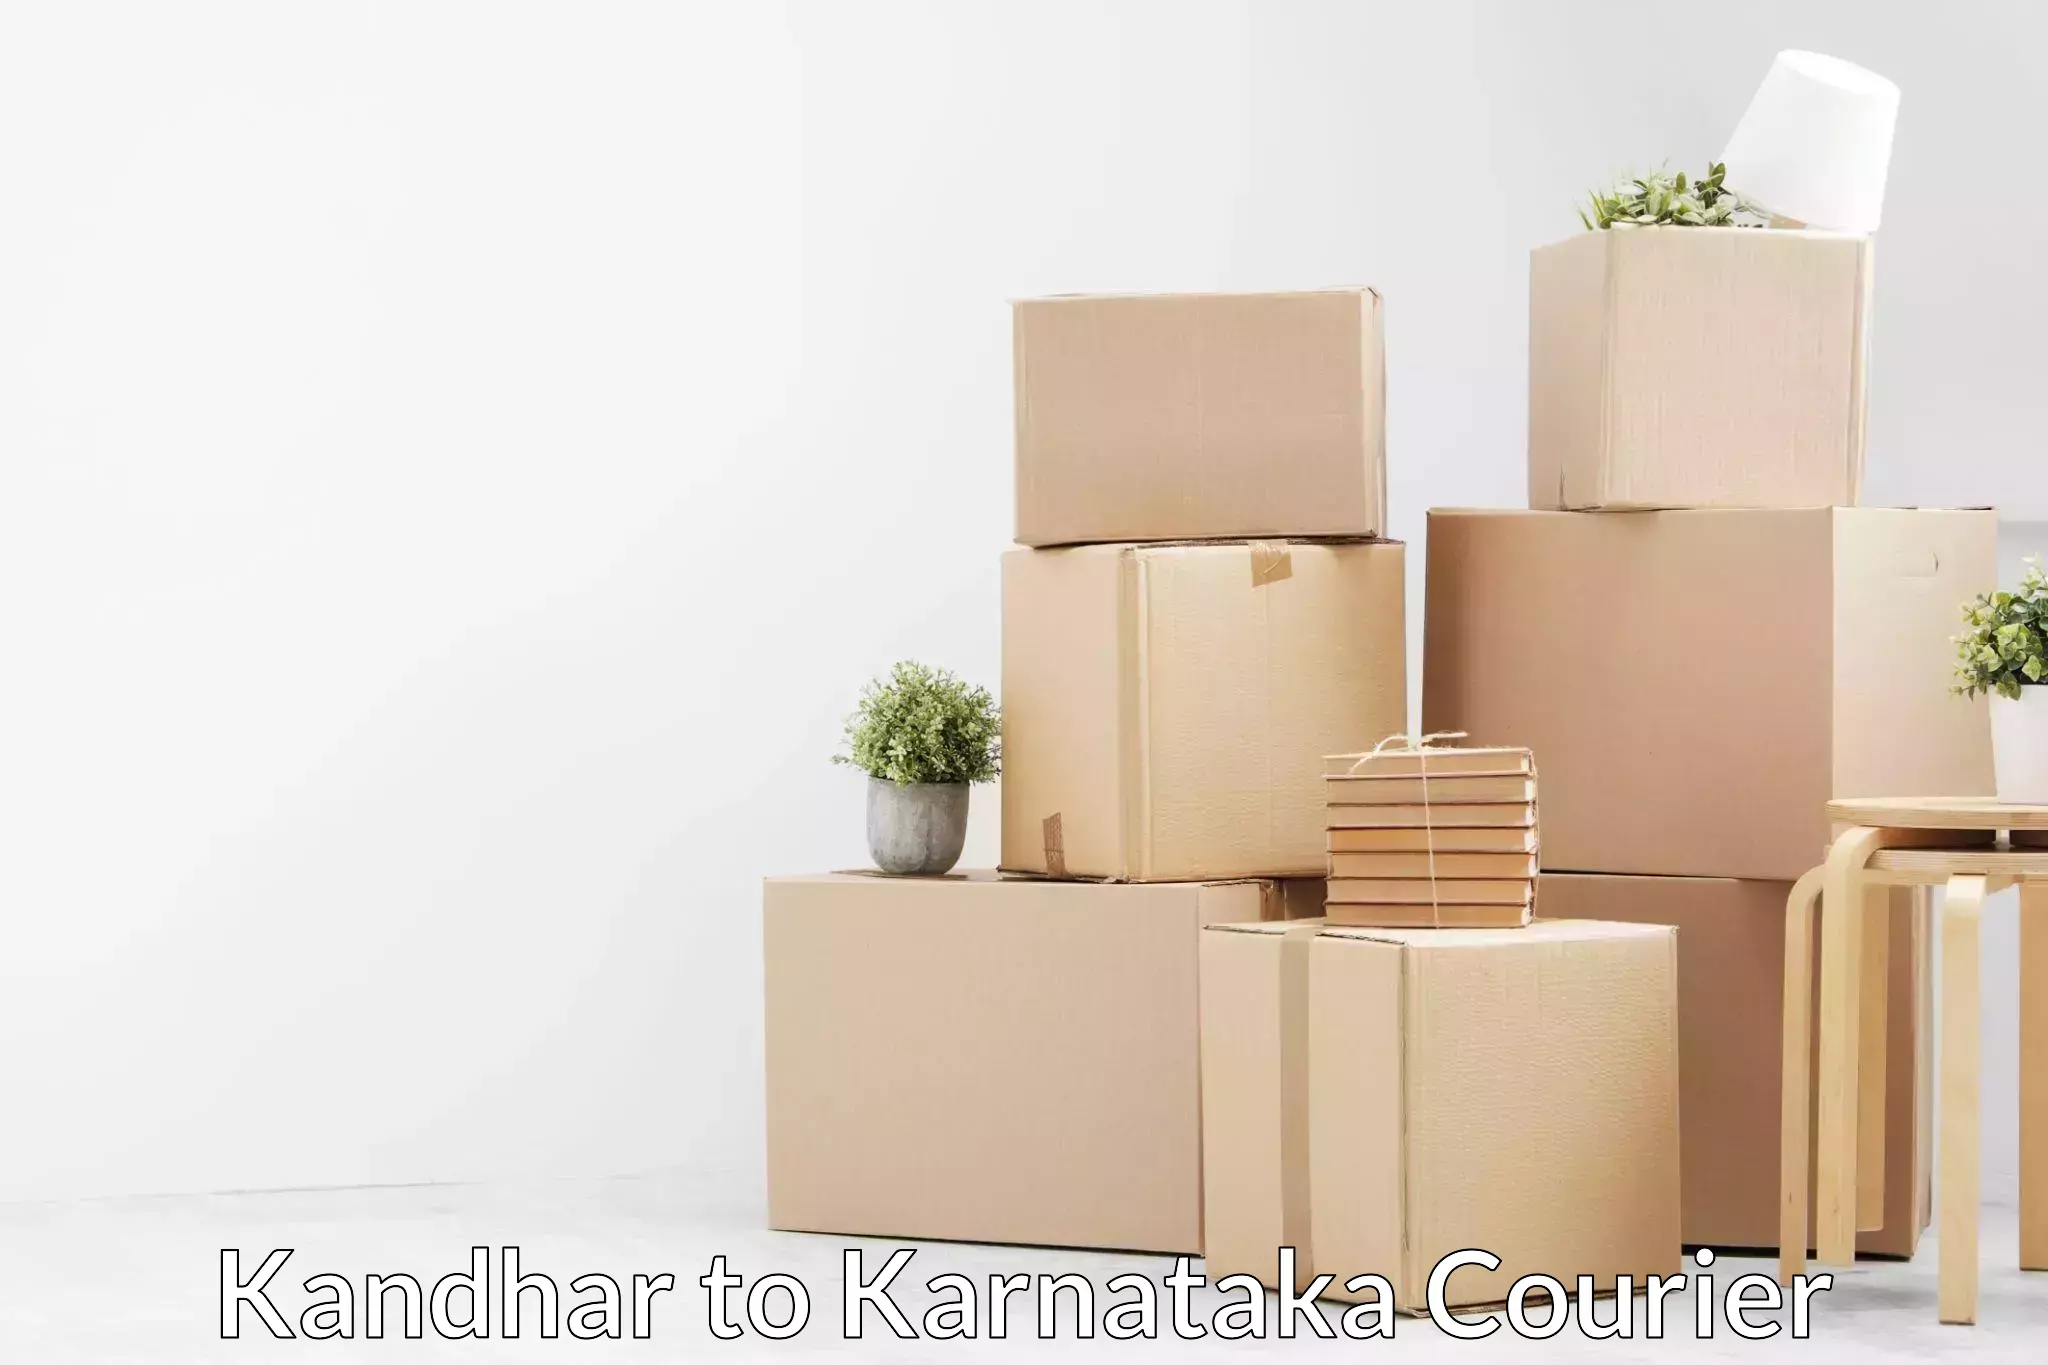 Quality furniture moving Kandhar to Karnataka